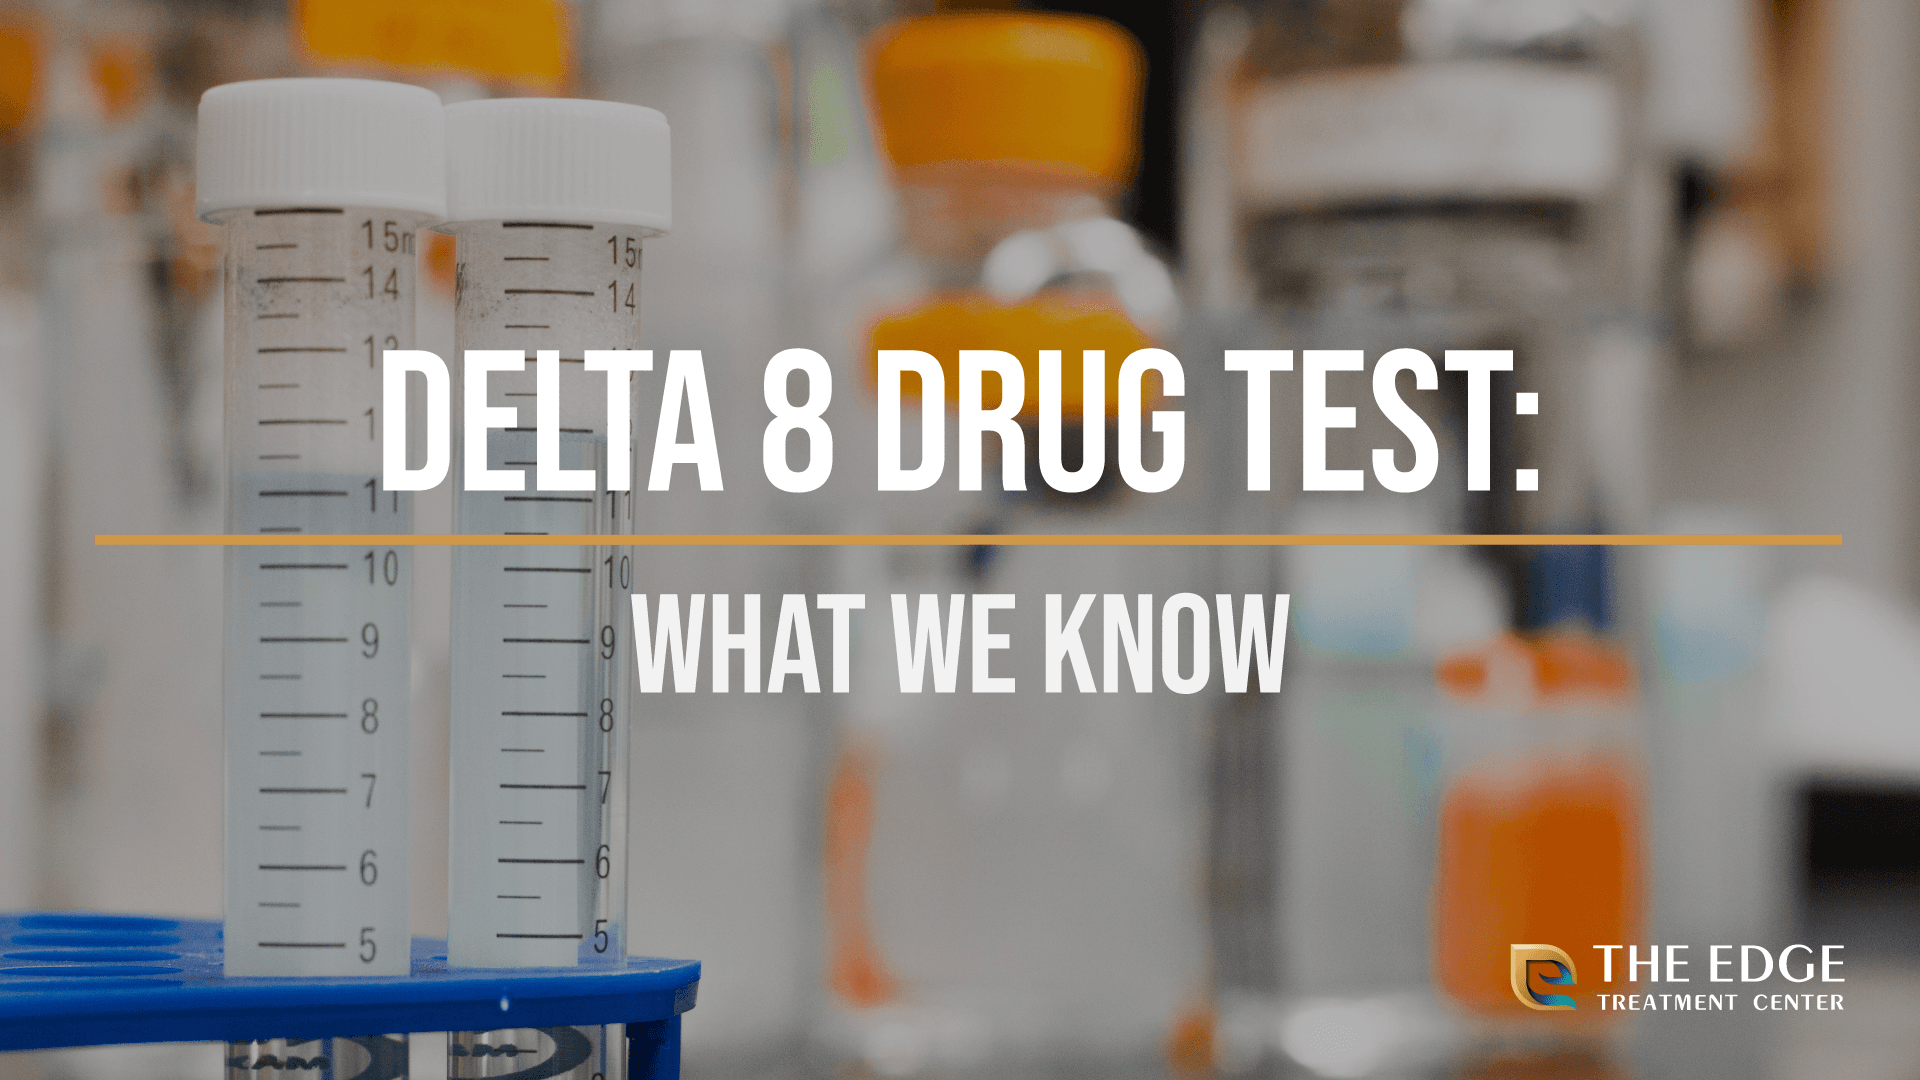 Does Delta 8 Show Up on Drug Tests?